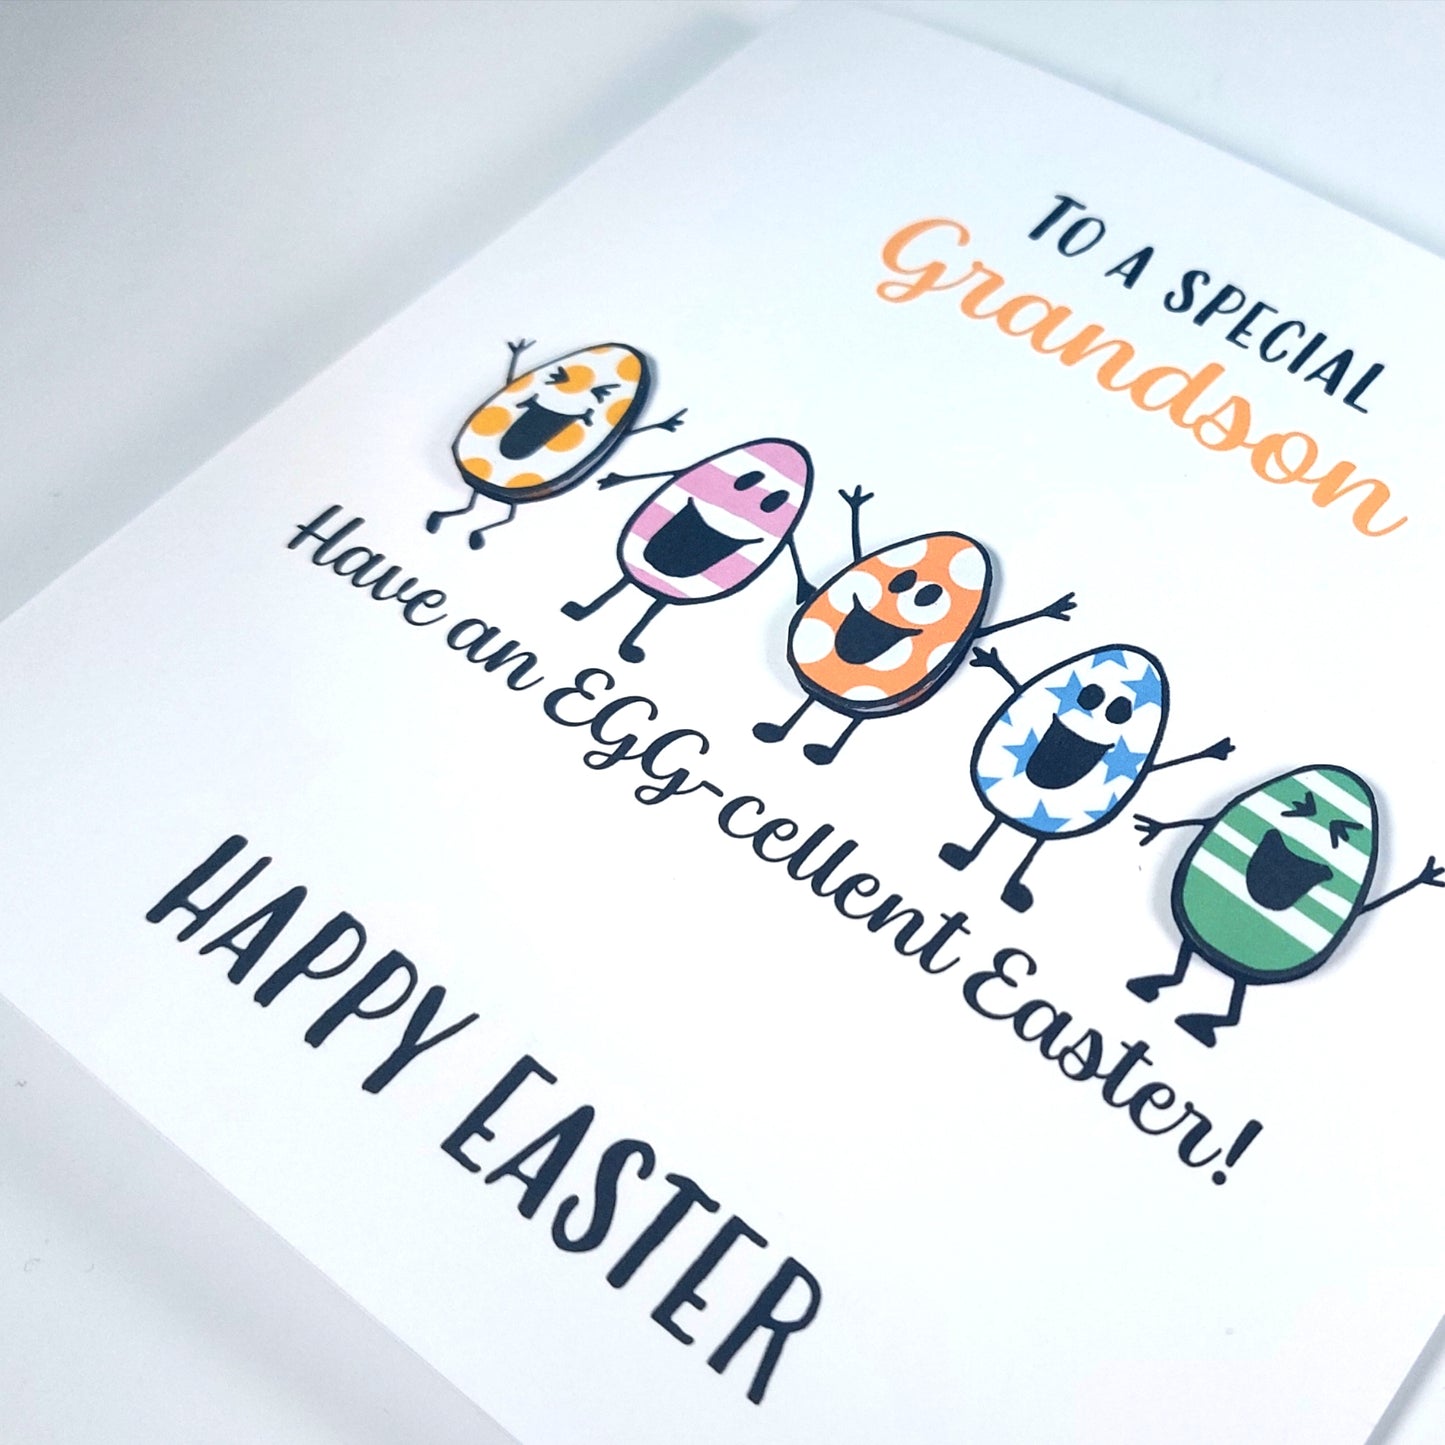 Grandson Egg-cellent Easter Card